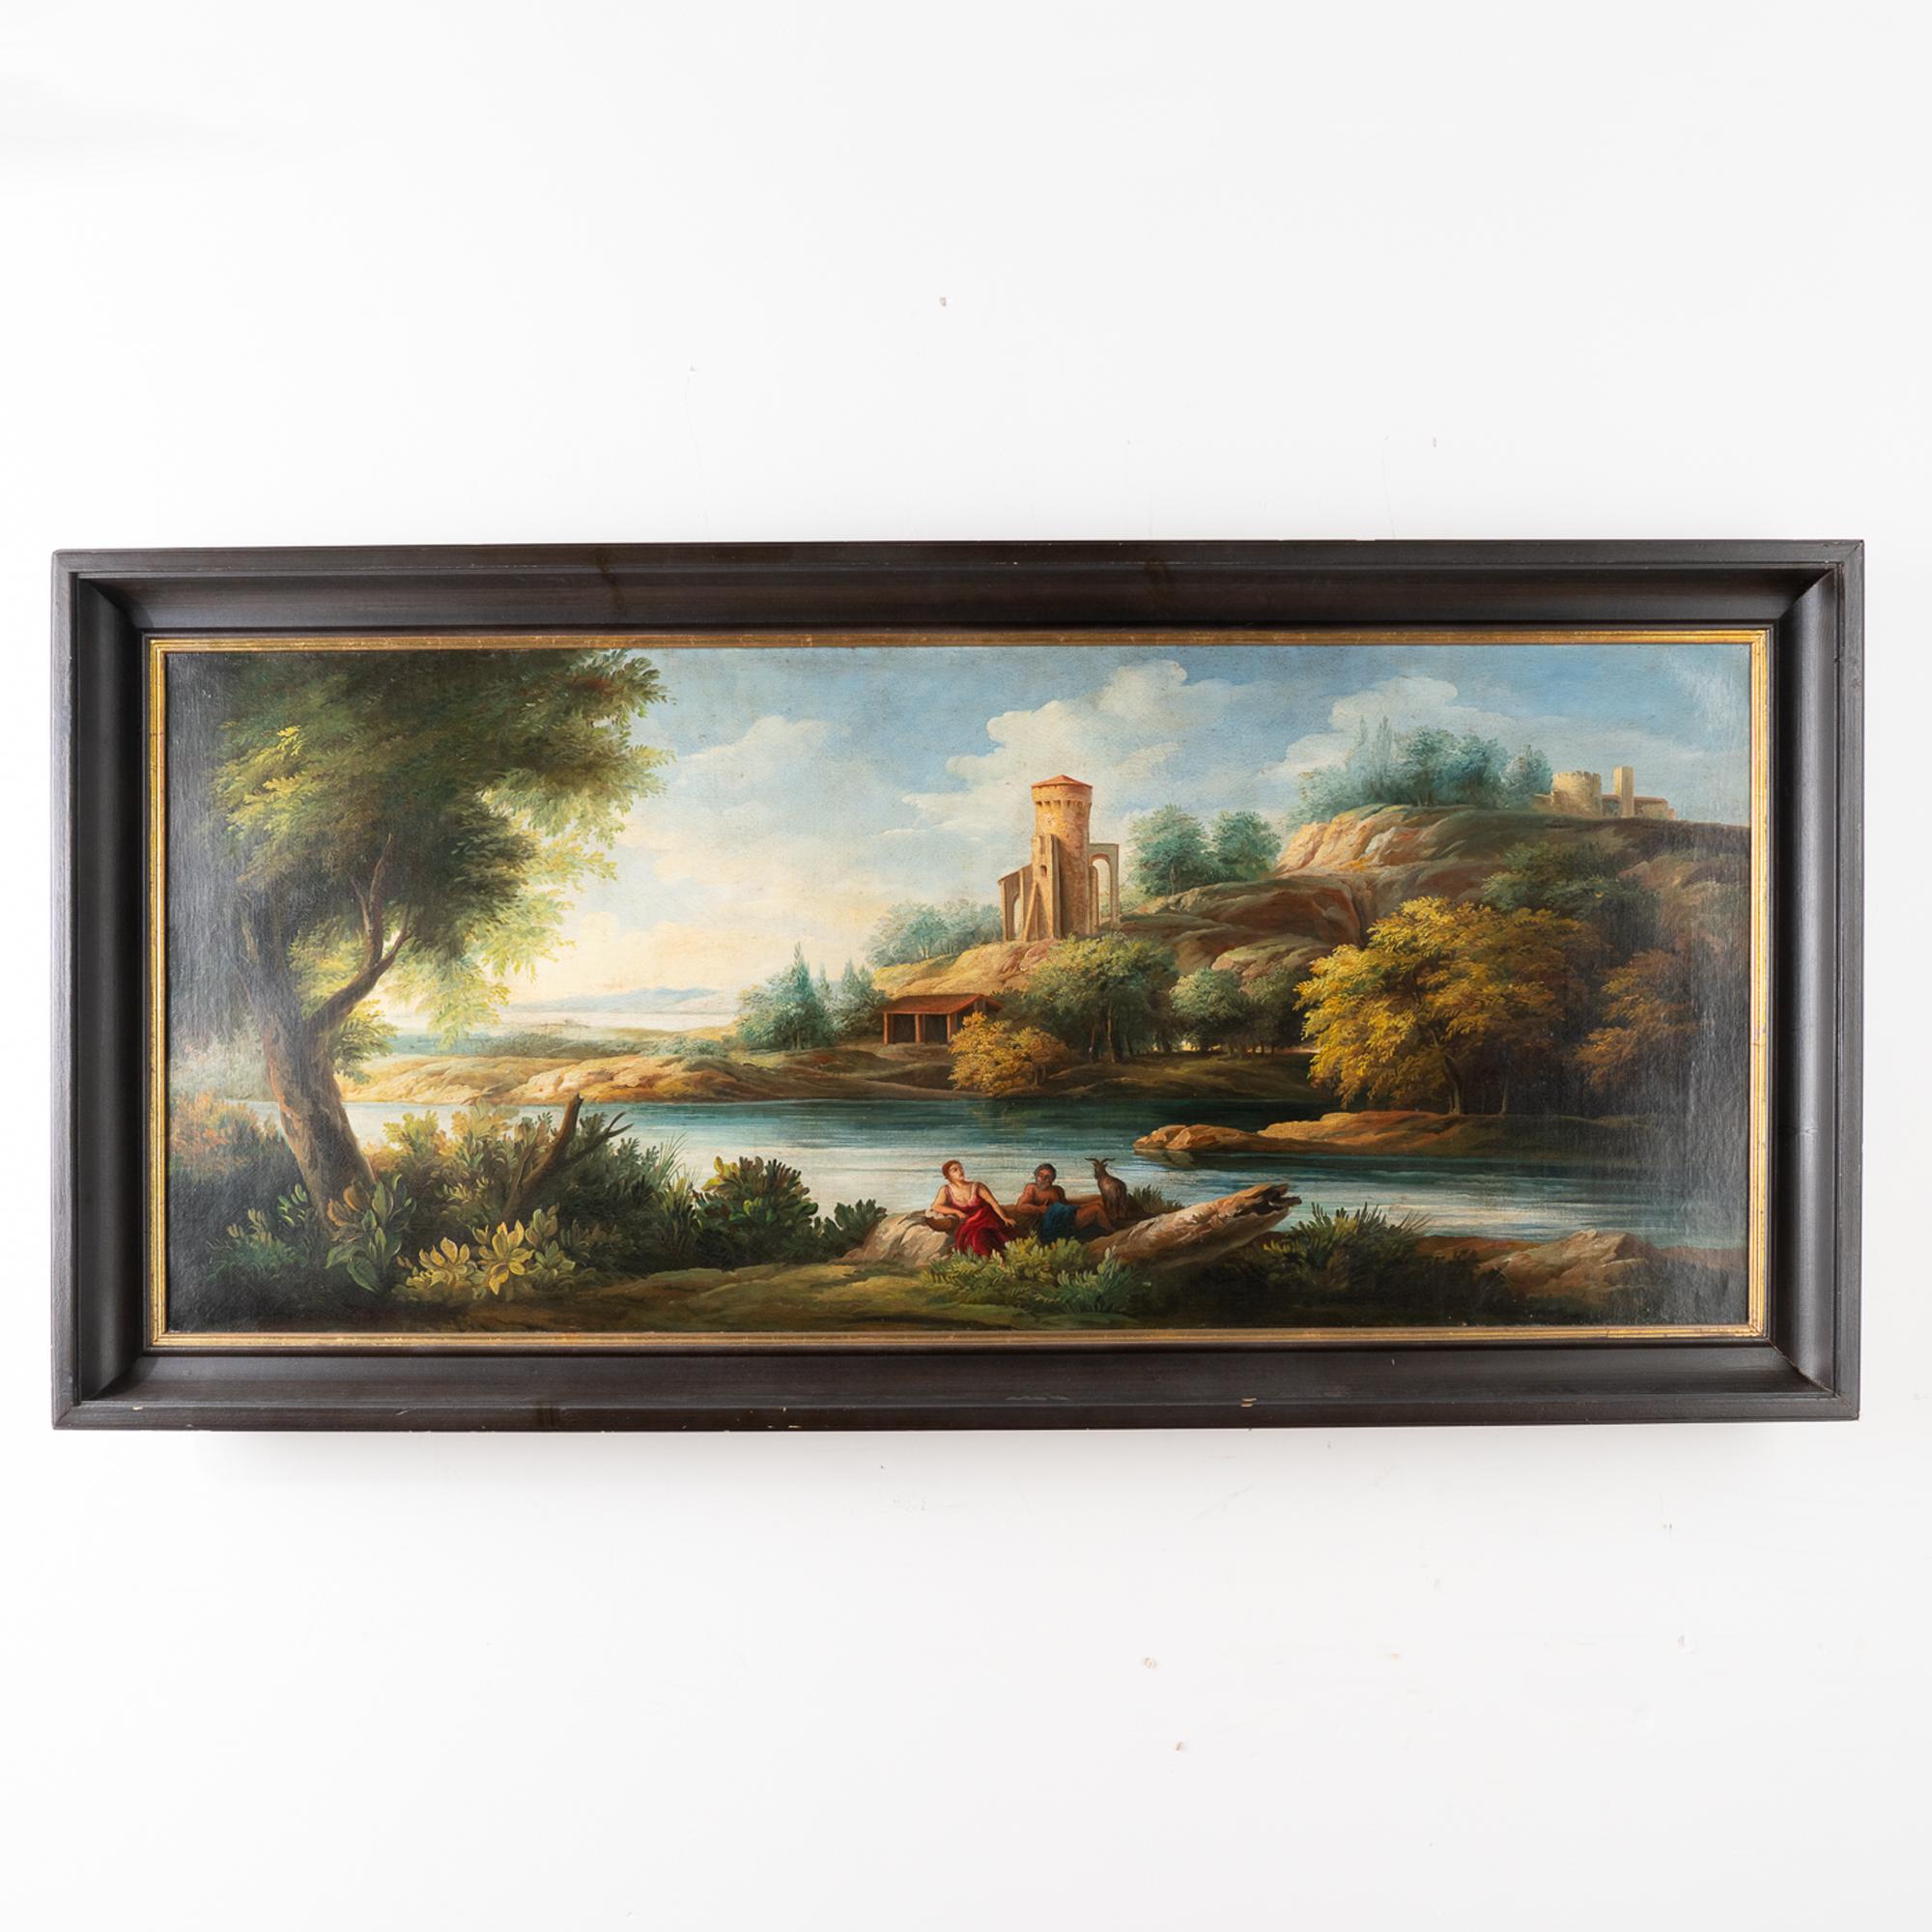 Peinture originale à l'huile sur toile représentant un paysage avec un couple au repos au premier plan et un château sur la colline au loin (coin supérieur droit).
La longueur impressionnante de 6 pieds ajoute à l'impact visuel de cette belle